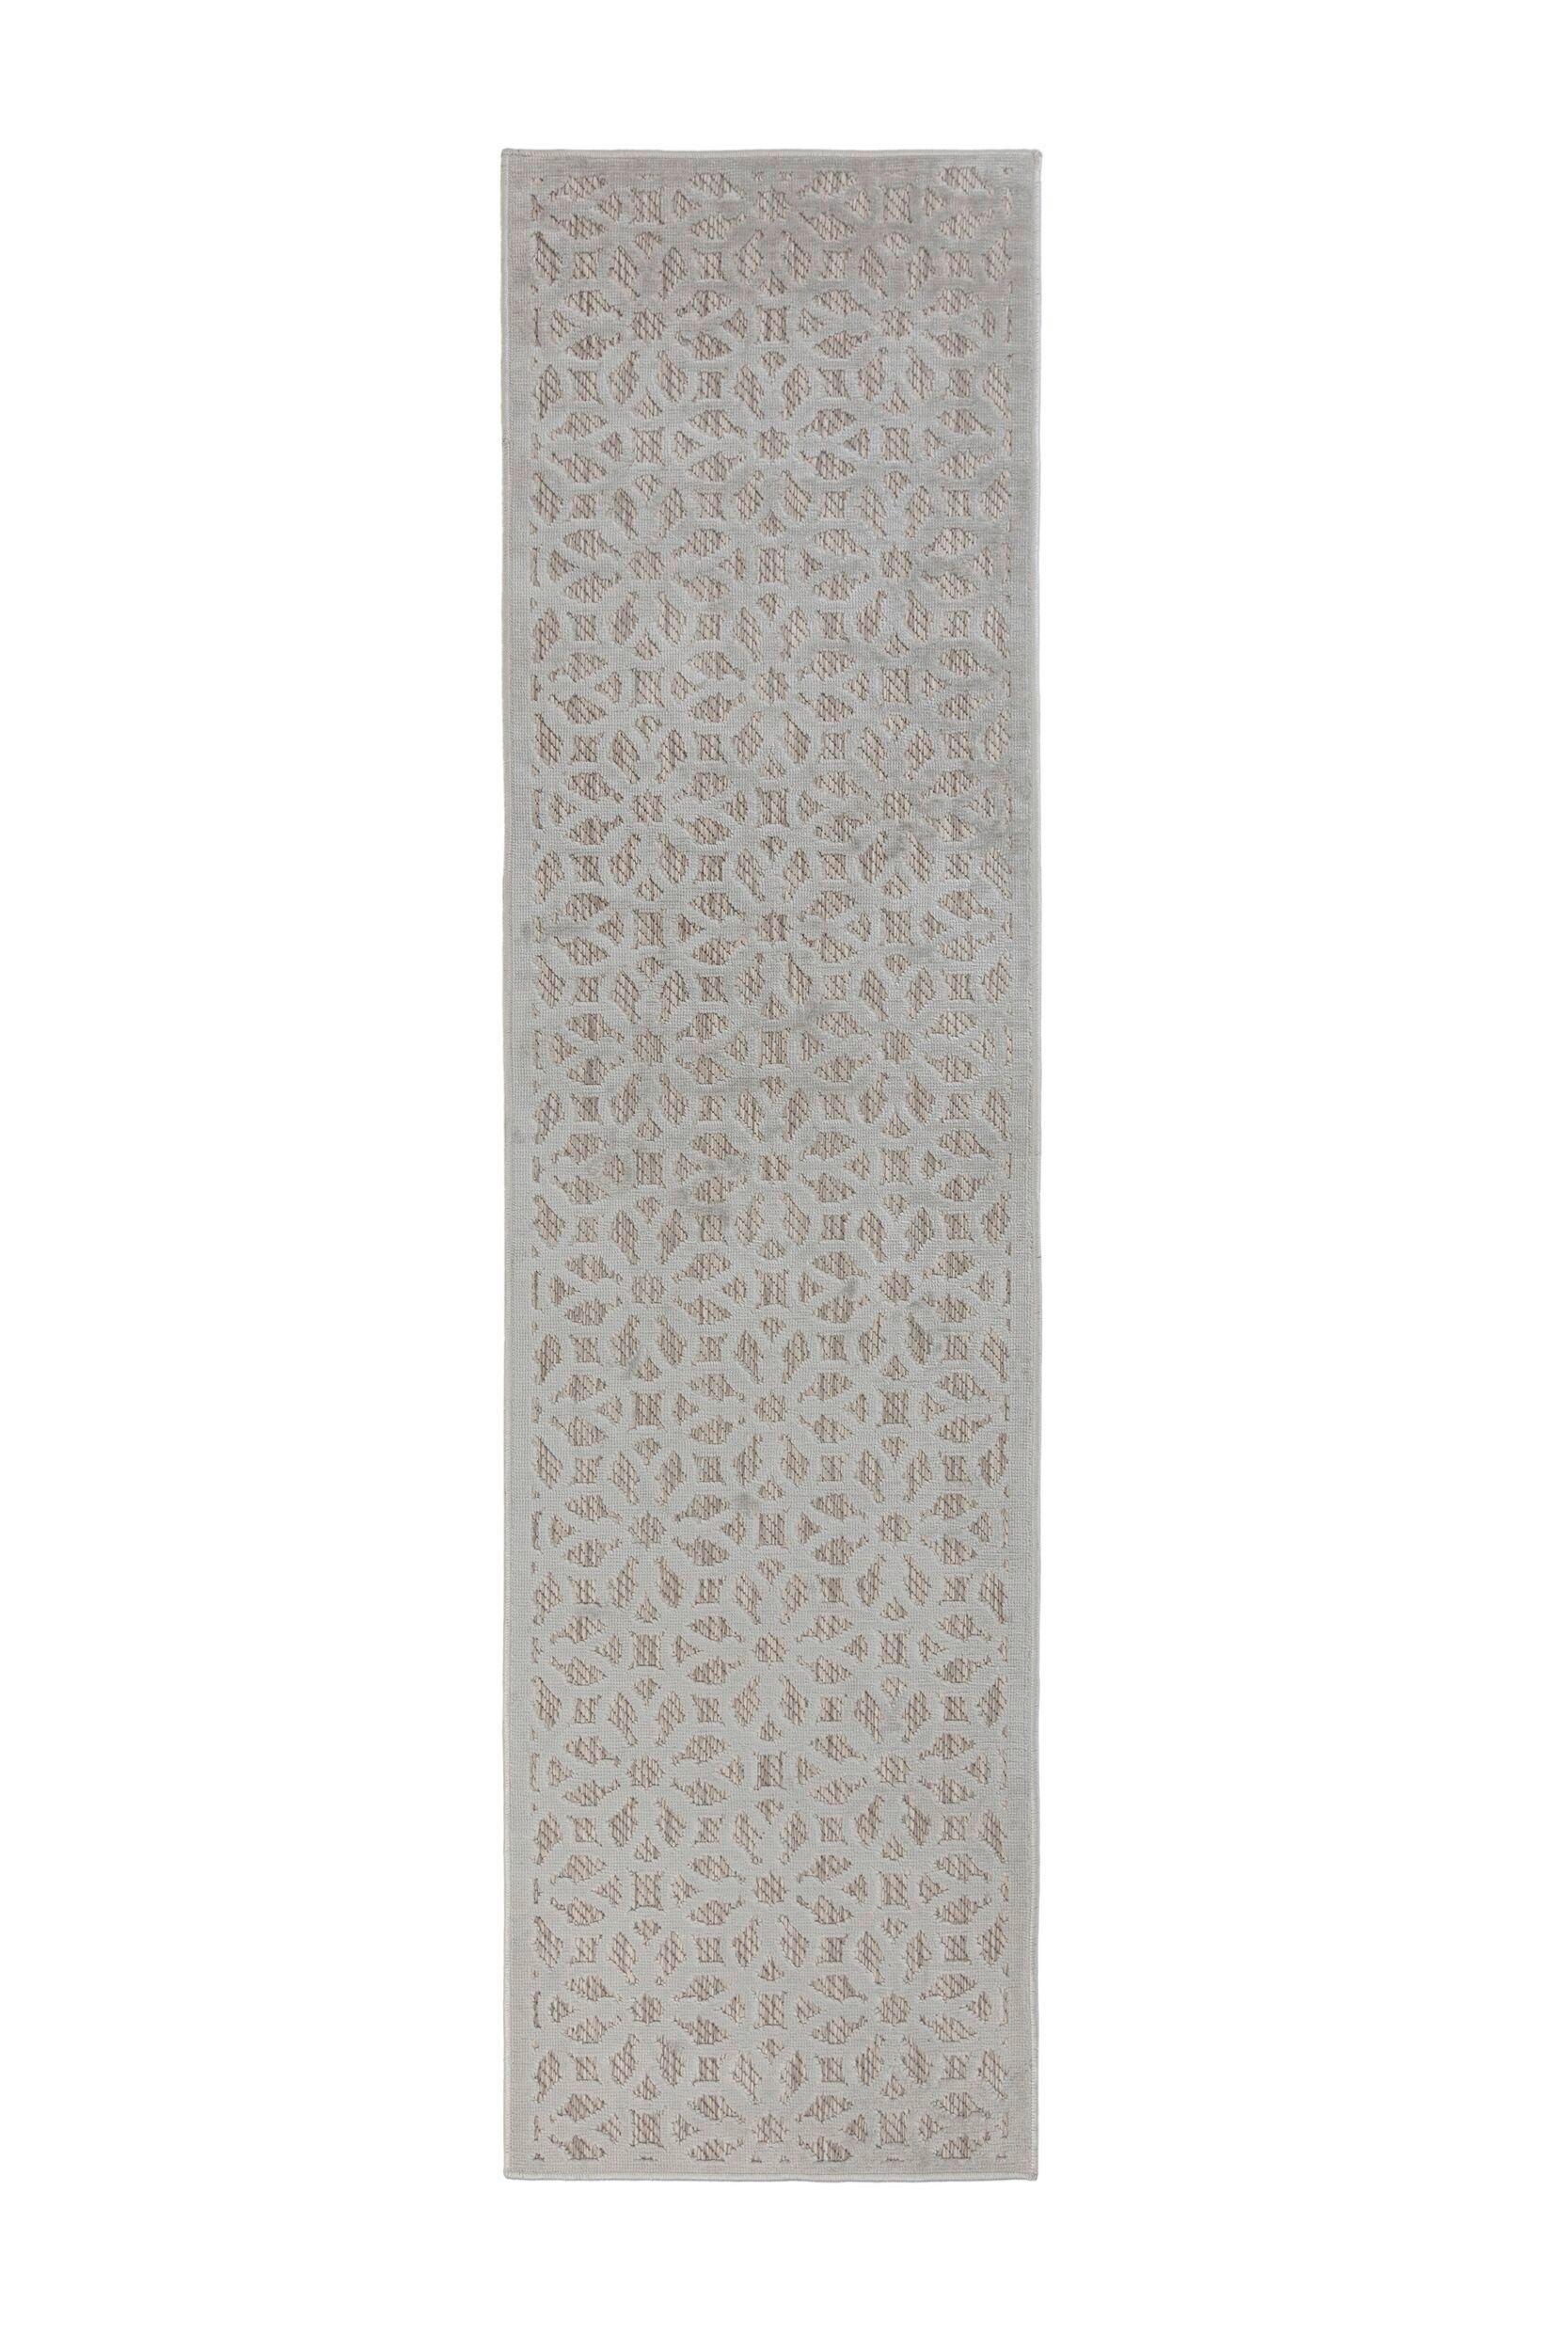 OUTDOORTEPPICH 66/230 cm Piatto  - Silberfarben, Basics, Textil (66/230cm)